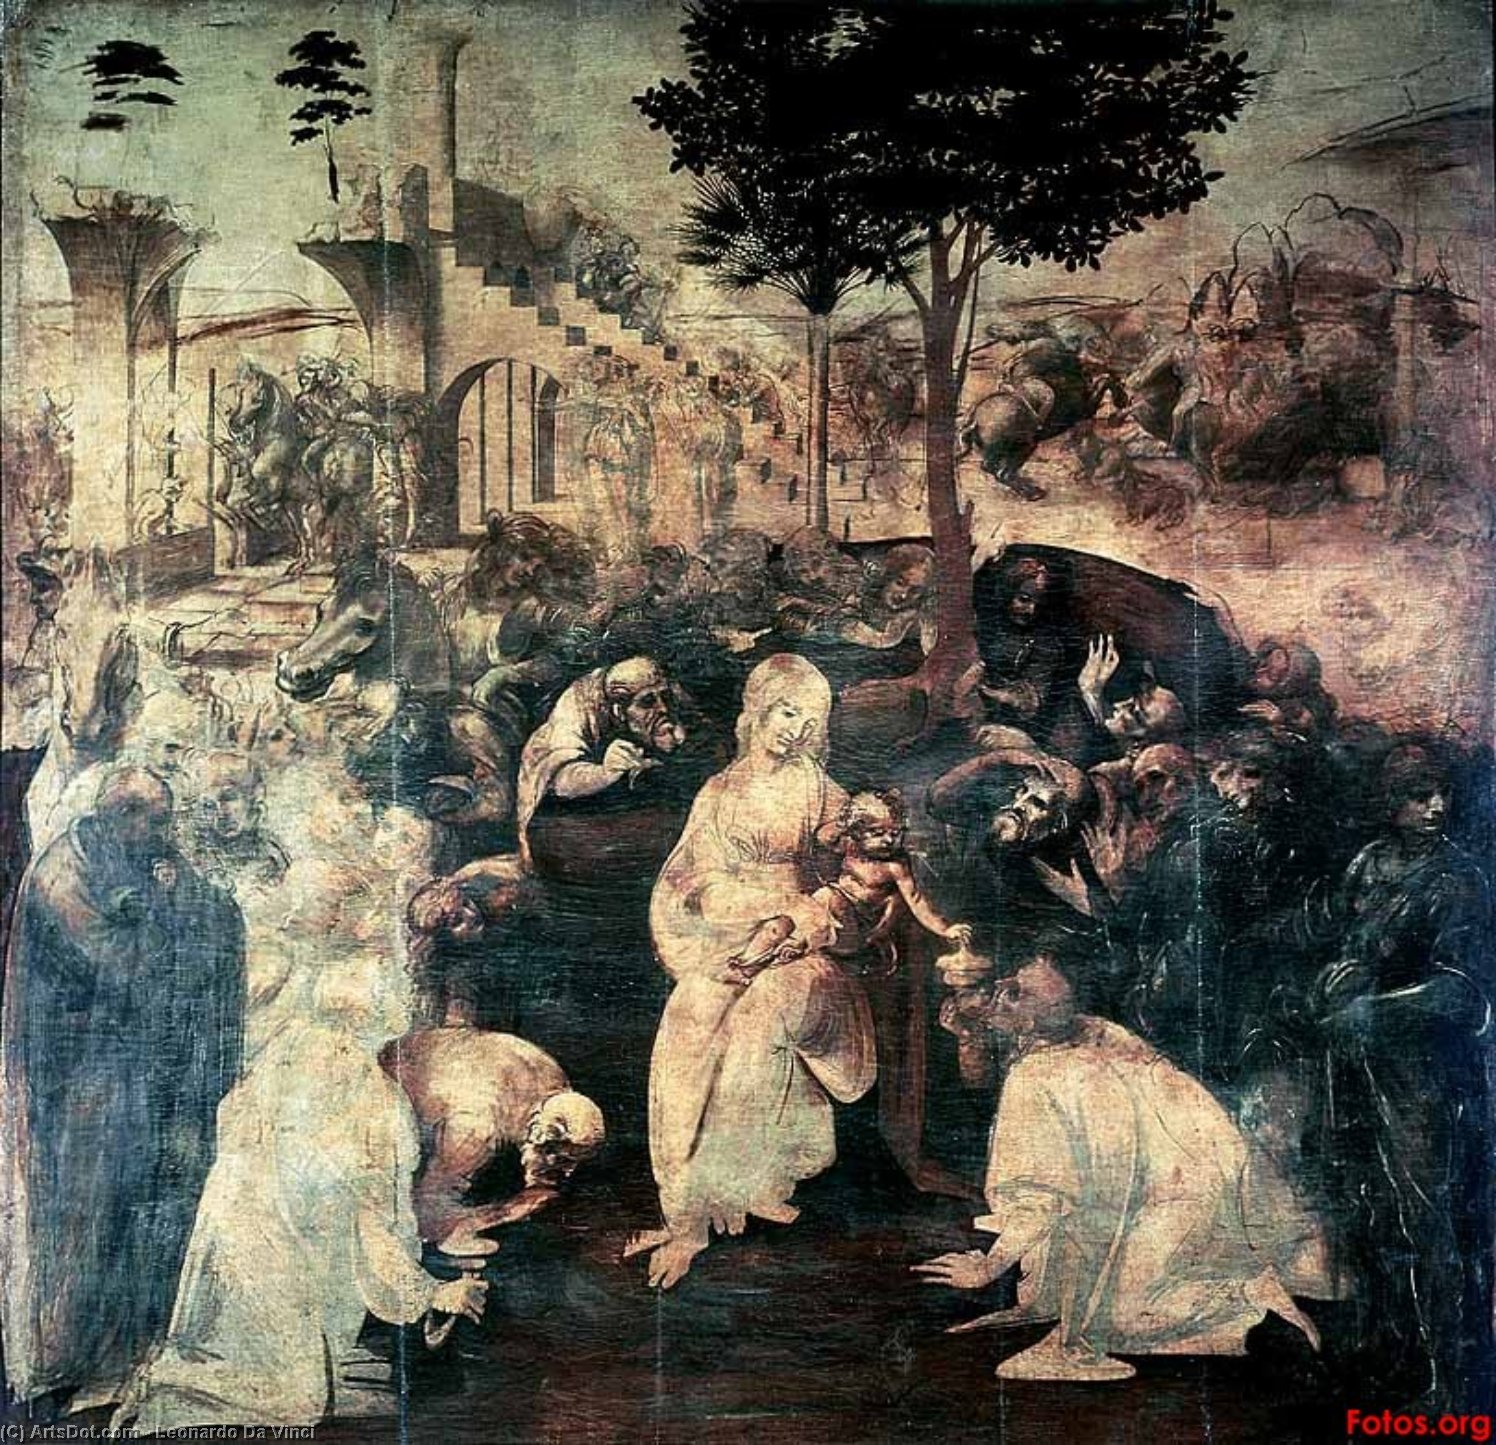 WikiOO.org - Encyclopedia of Fine Arts - Maleri, Artwork Leonardo Da Vinci - L'adorazione dei Magi